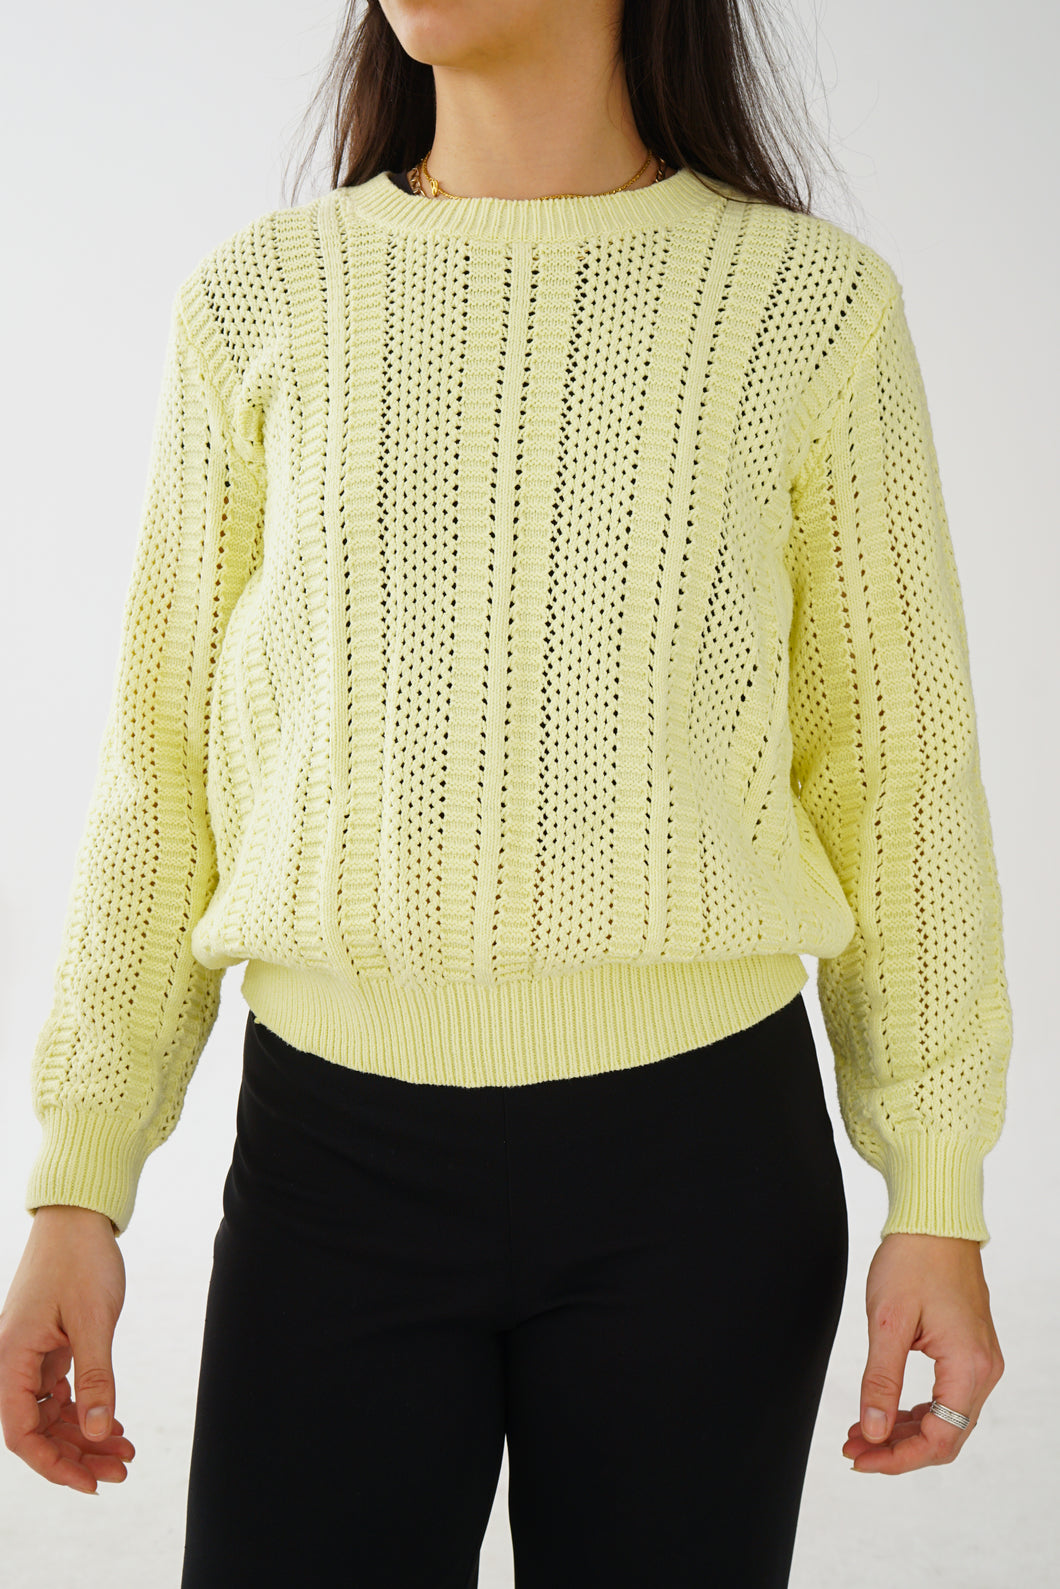 Chandail tricot vintage jaune pâle pour femme taille S